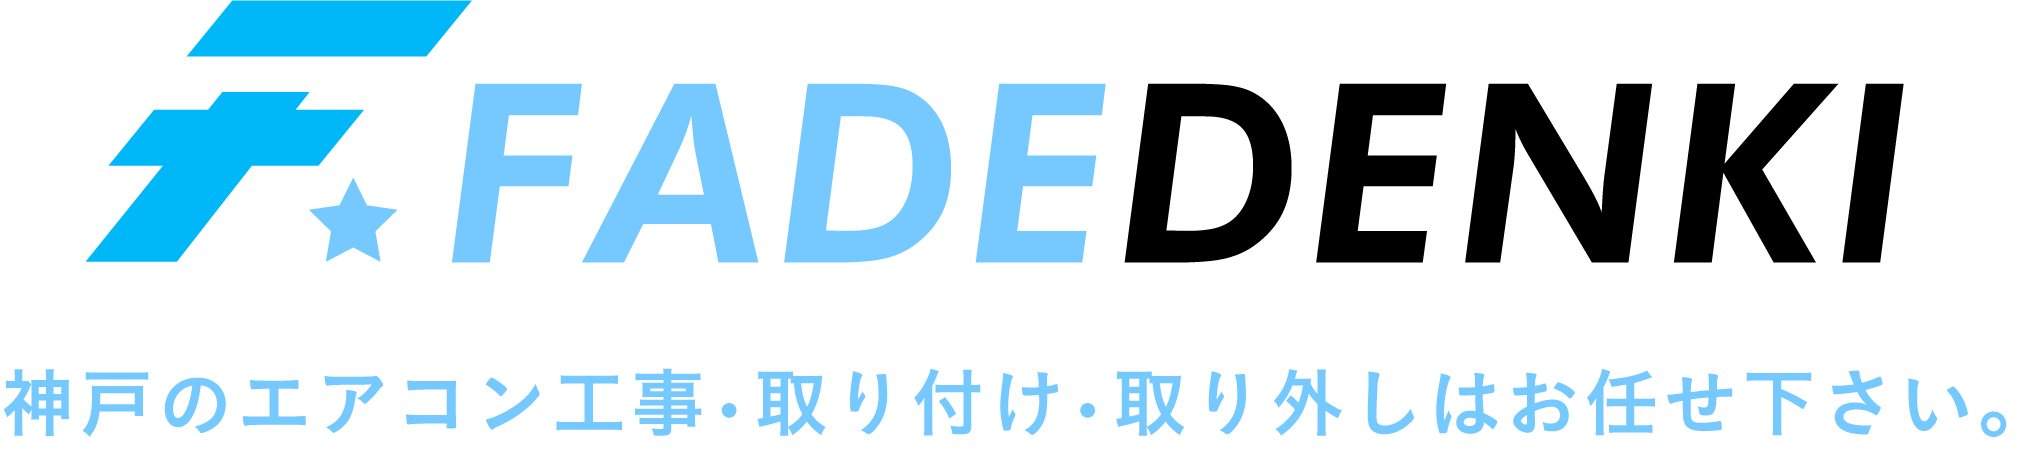 神戸のエアコン取り付けや交換なら「FADEDENKI」